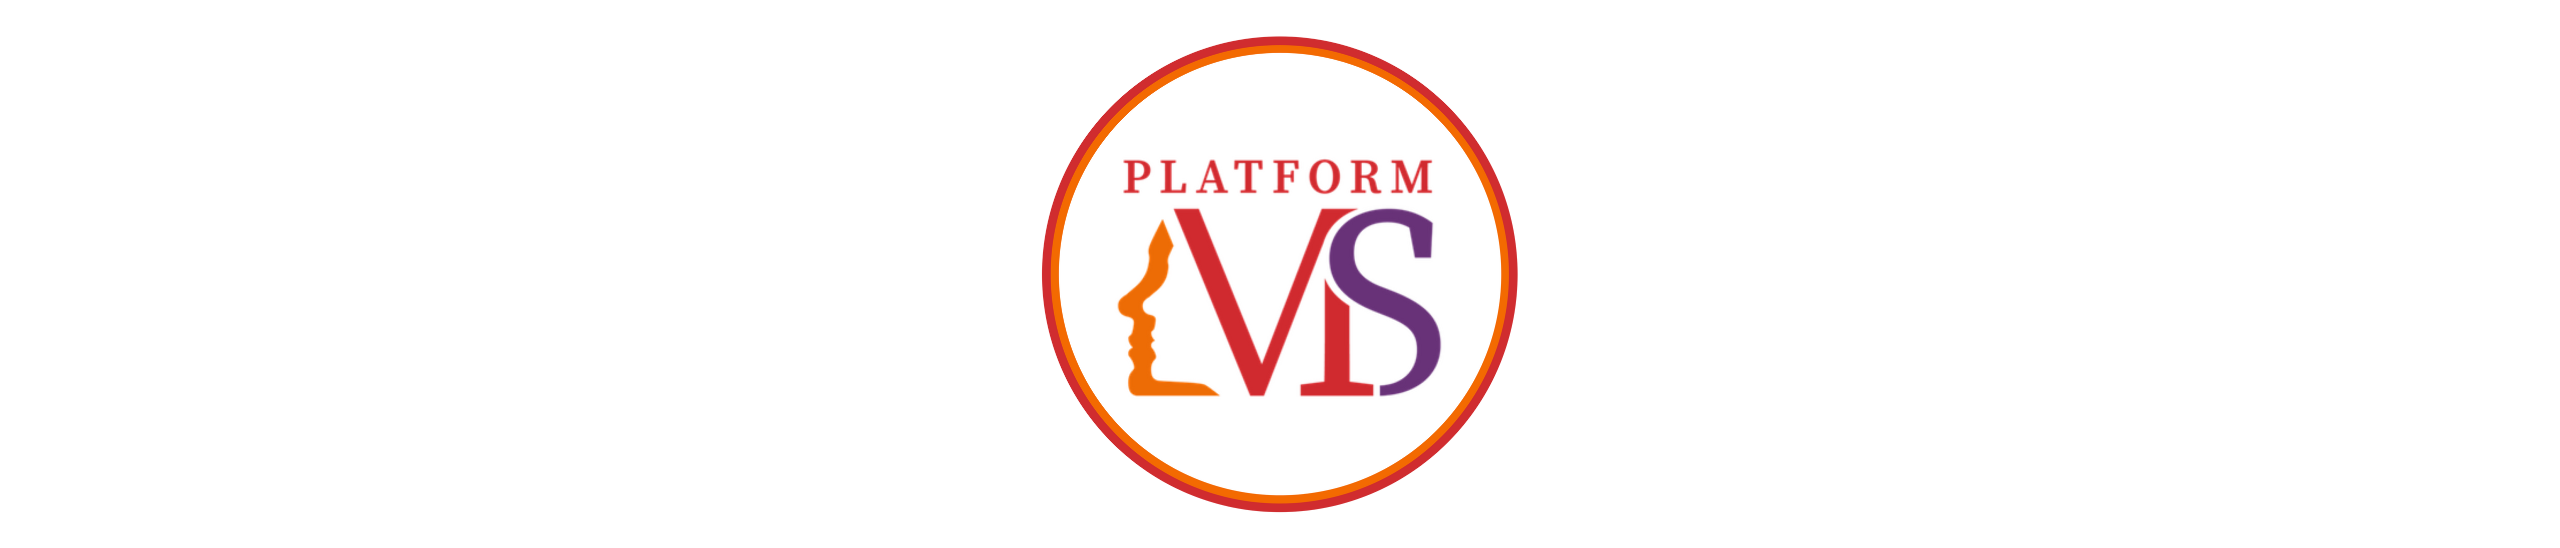 Platform MS